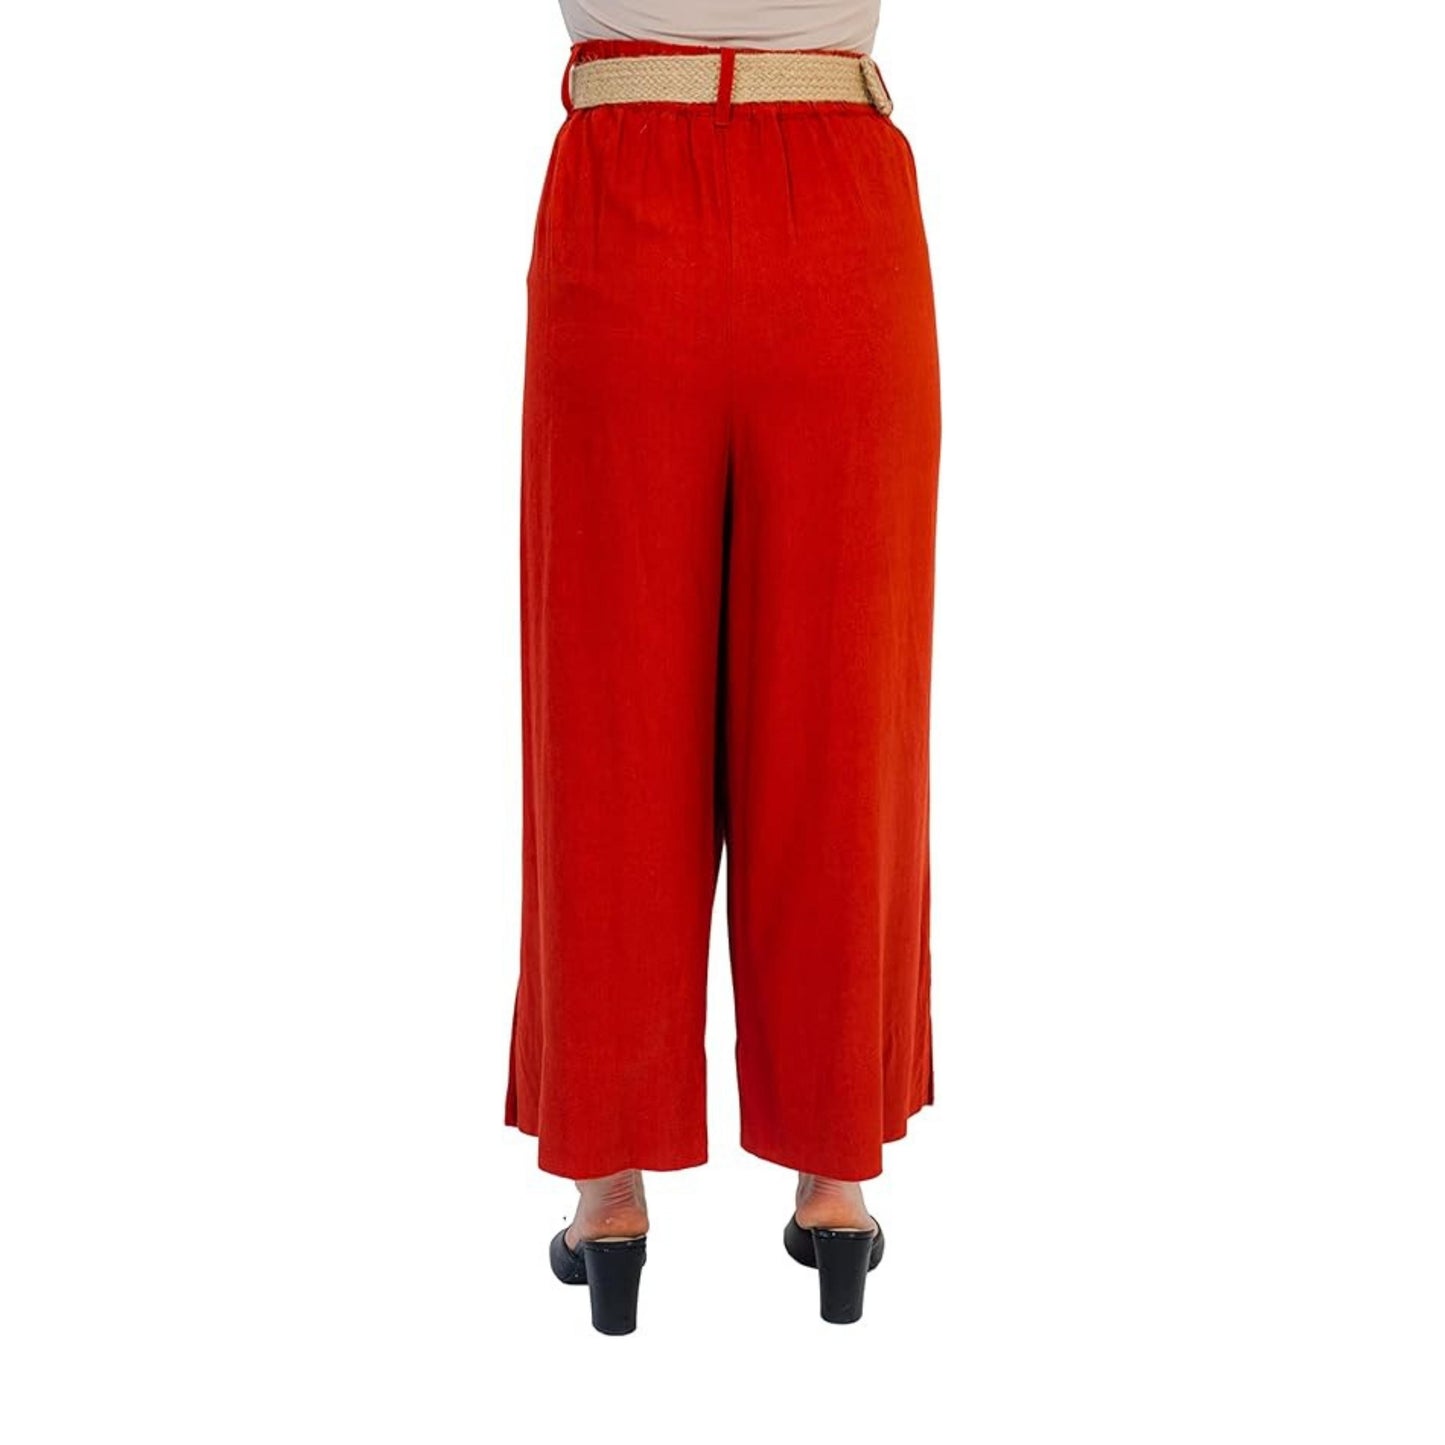 Ladies Work Pants Cathy Fit® - Size 12 Regular - 3 Pairs Used - Cintas  #395